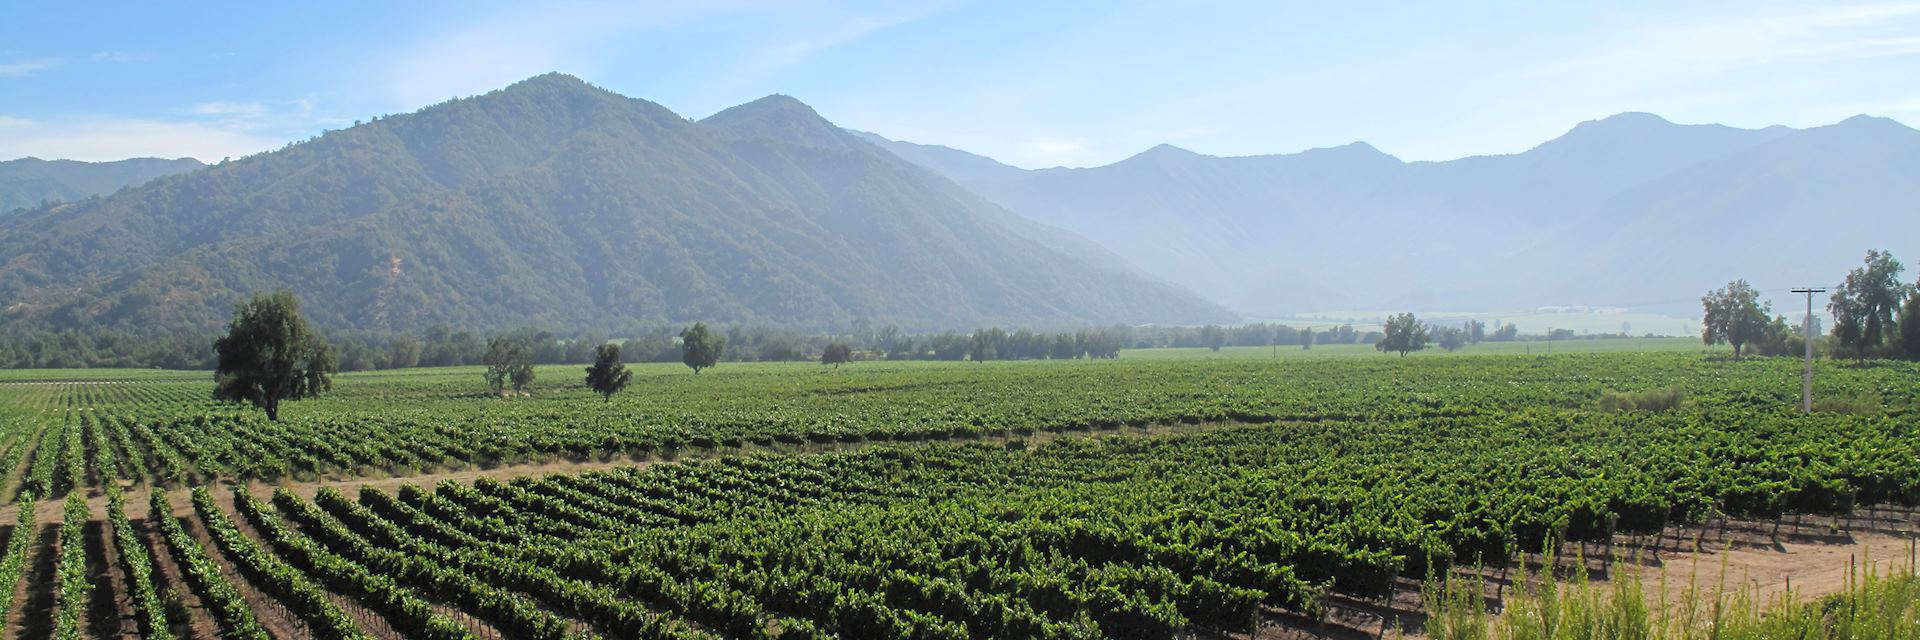 Vineyard in Chile's Winelands region